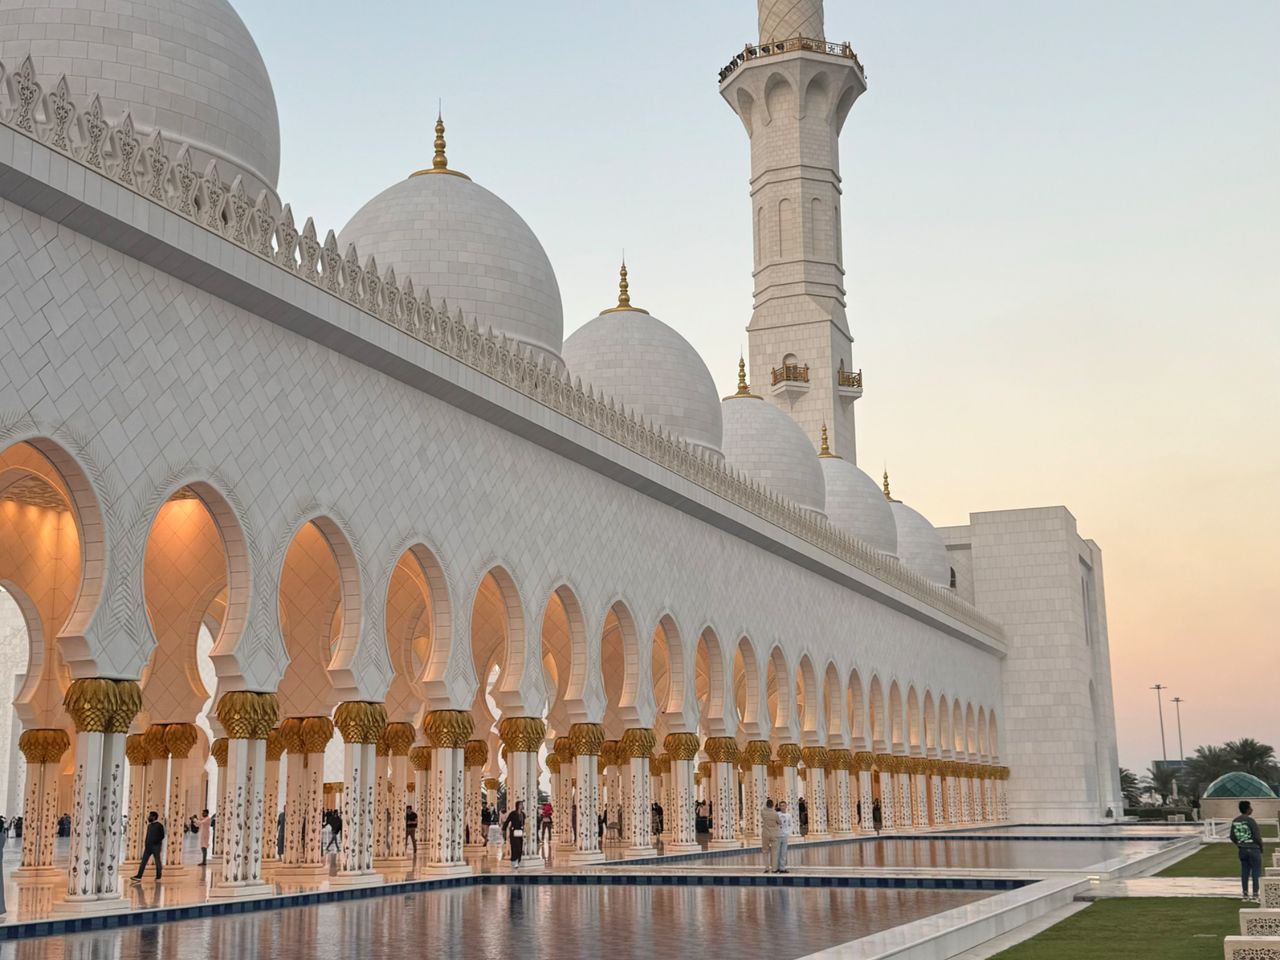 Поездка на целый день в Абу-Даби | Цена 255$, отзывы, описание экскурсии